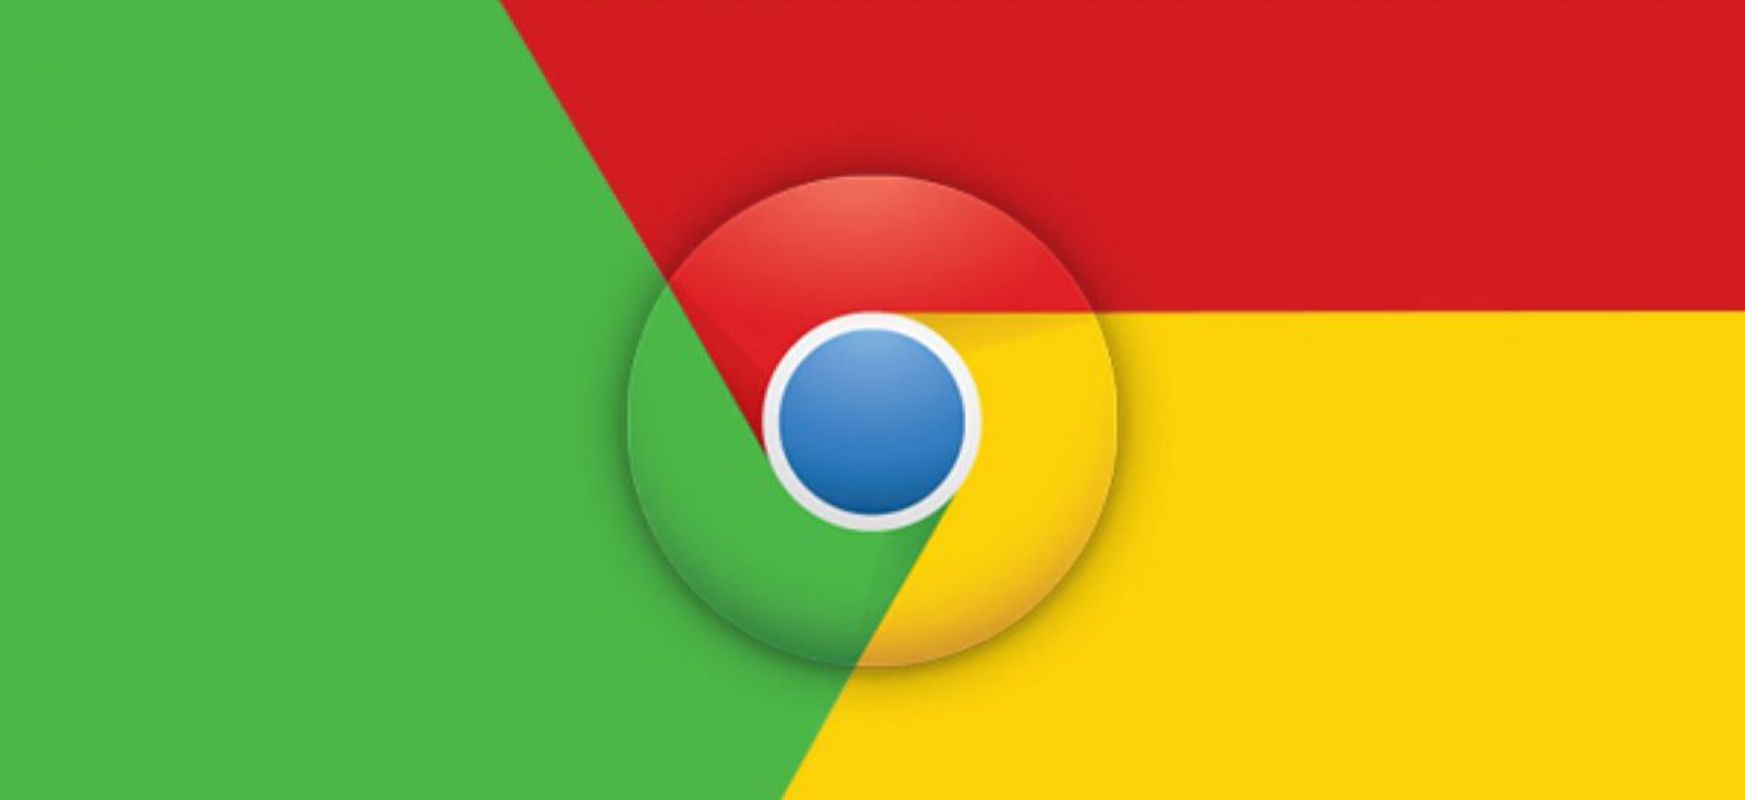  Google Chrome-k babesten gaitu denbora errealean.  Arriskuen datuak zuzenean jasoko dira
